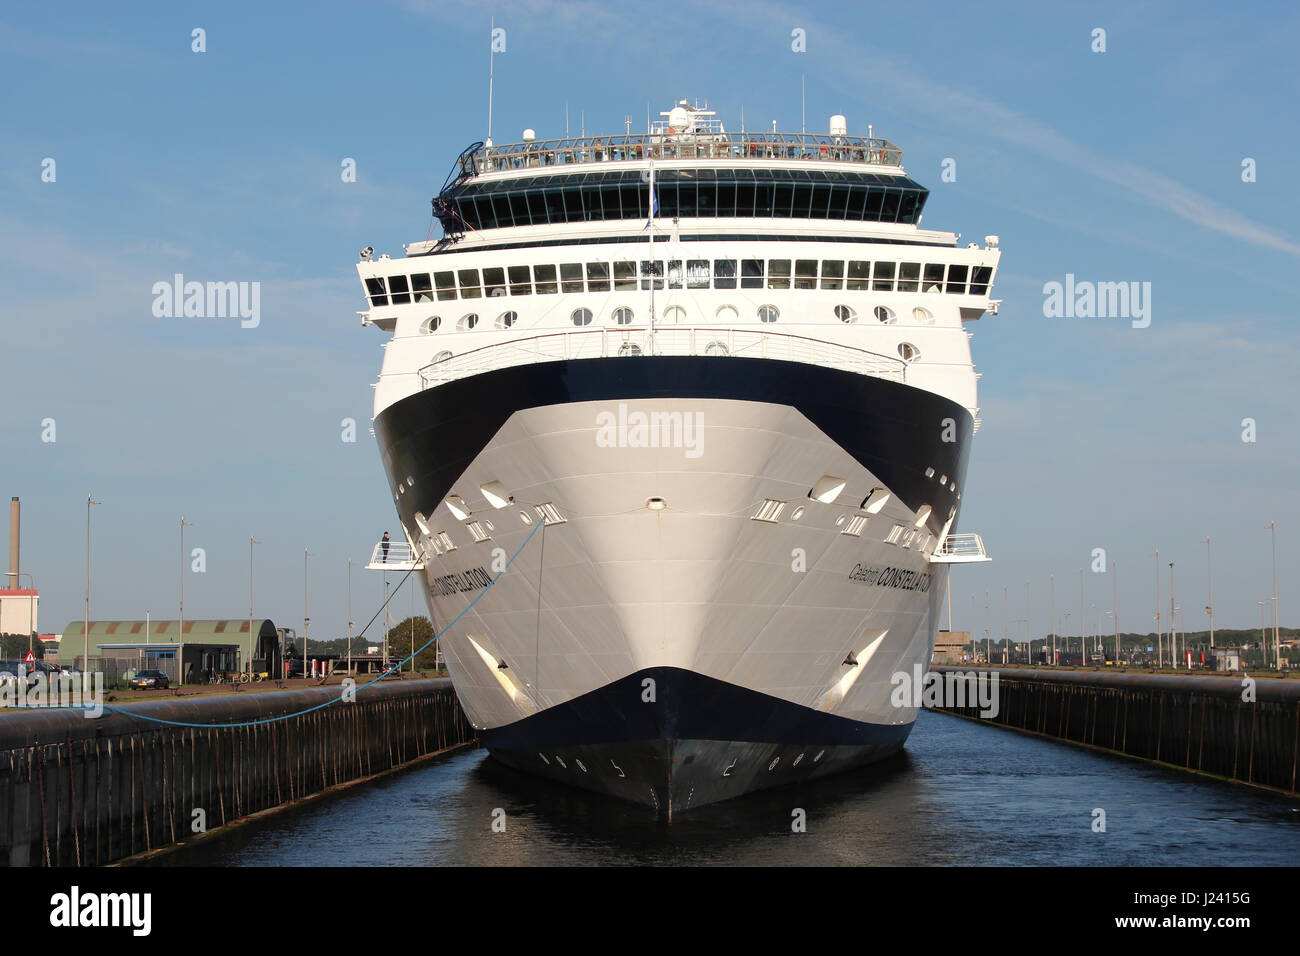 CELEBRITY CONSTELLATION in der Schleuse von IJmuiden. CELEBRITY CONSTELLATION ist eine Millennium-Klasse Kreuzfahrtschiff von Celebrity Cruises. Stockfoto